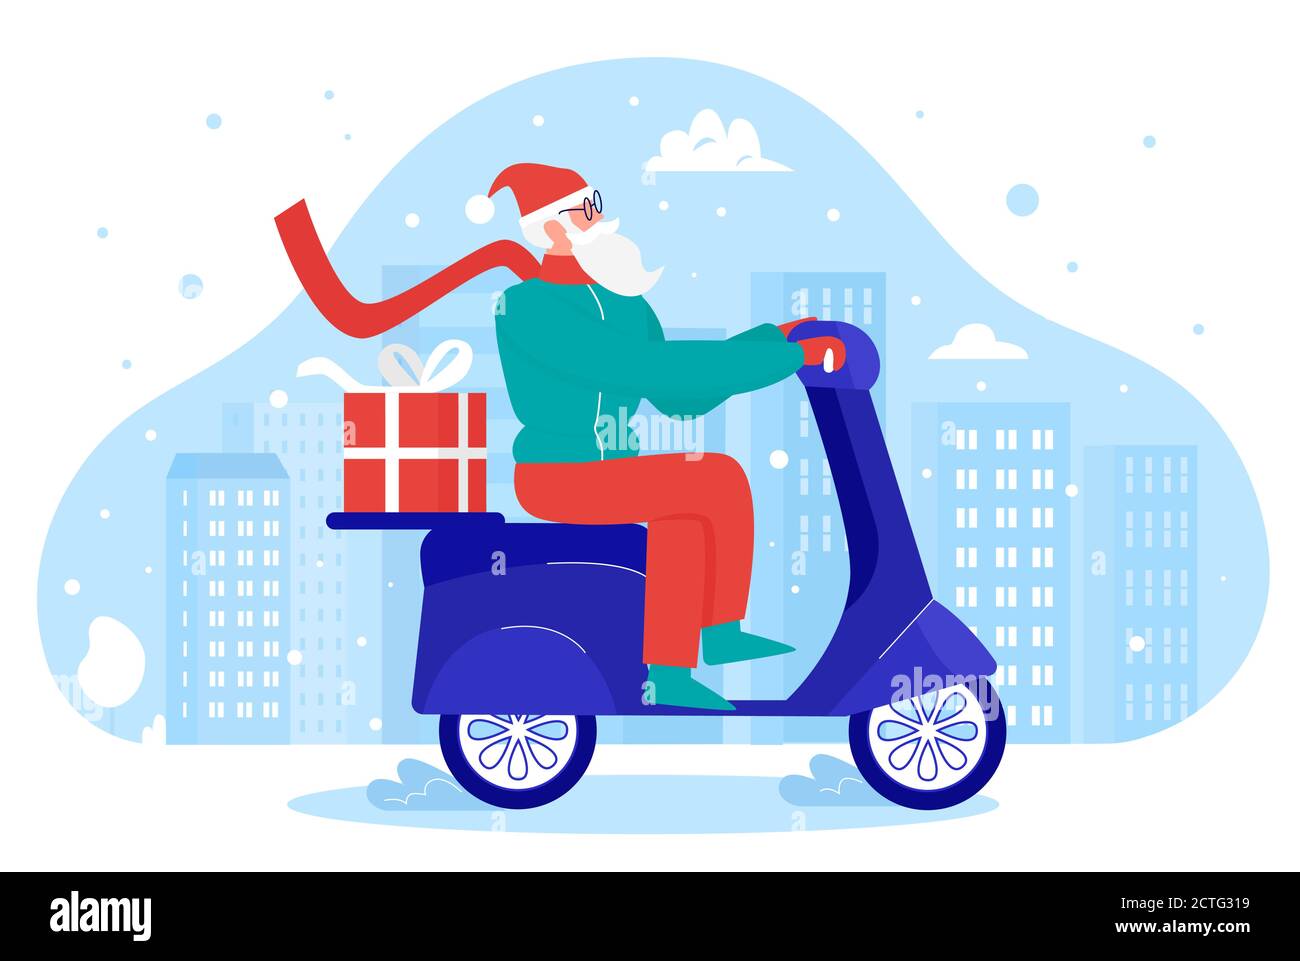 Santa liefert Geschenke Vektor Illustration. Cartoon Wohnung Xmas Kurier Charakter Reiten Roller, Arbeiten in Weihnachten Geschenk-Box Lieferung, Online-Shop Urlaub Versand-Service isoliert auf weiß Stock Vektor